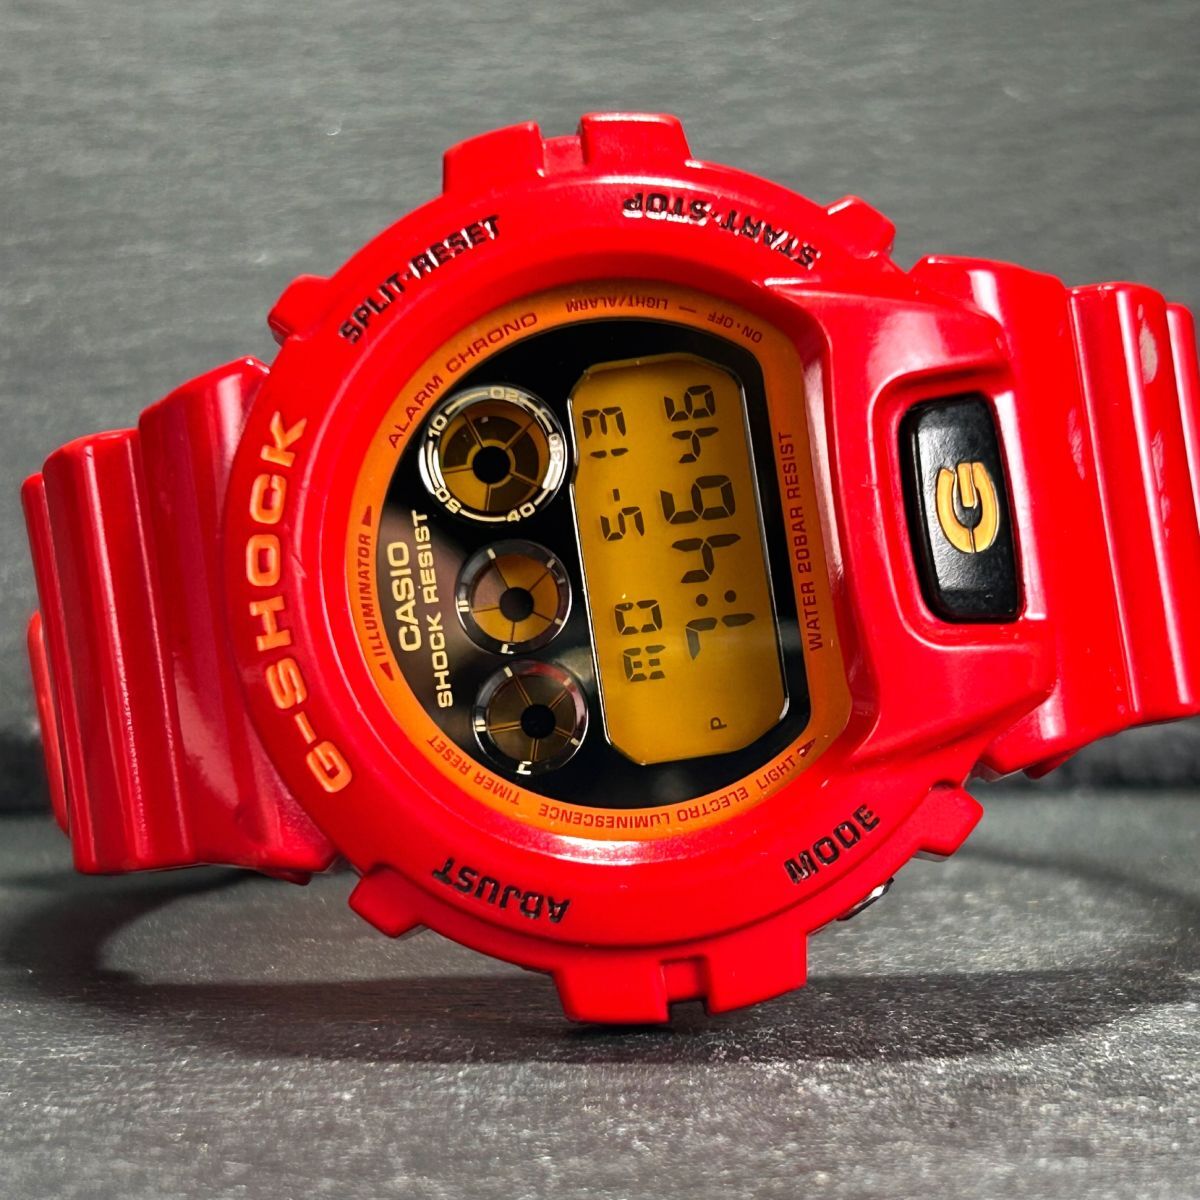  ограничение  модель   CASIO  casio   G-SHOCK ... аммортизаторы  ... цвет ... DW-6900CB-4  наручные часы   кварцевый   цифровая   многофункциональный    мужской   новый товар  батарея  замена ...